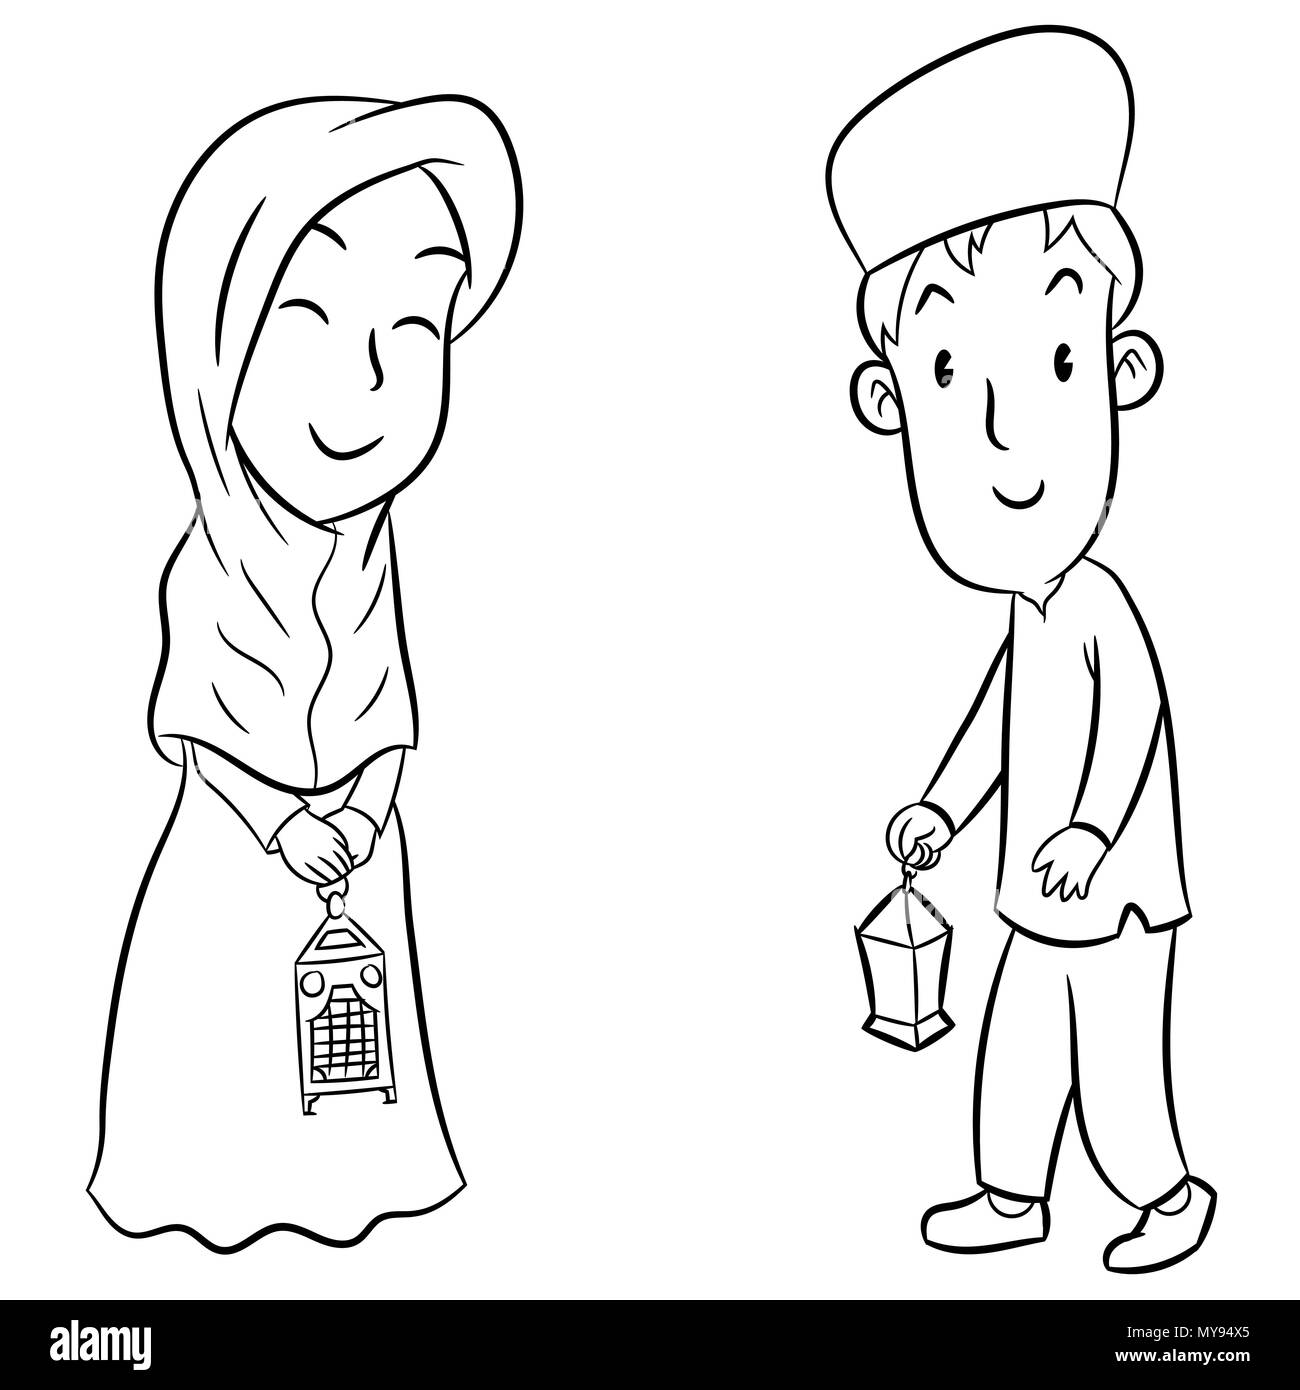 Disegnata a mano dei bambini musulmani con lanterne di Eid, in bianco e nero il disegno per la colorazione - illustrazione vettoriale. Illustrazione Vettoriale